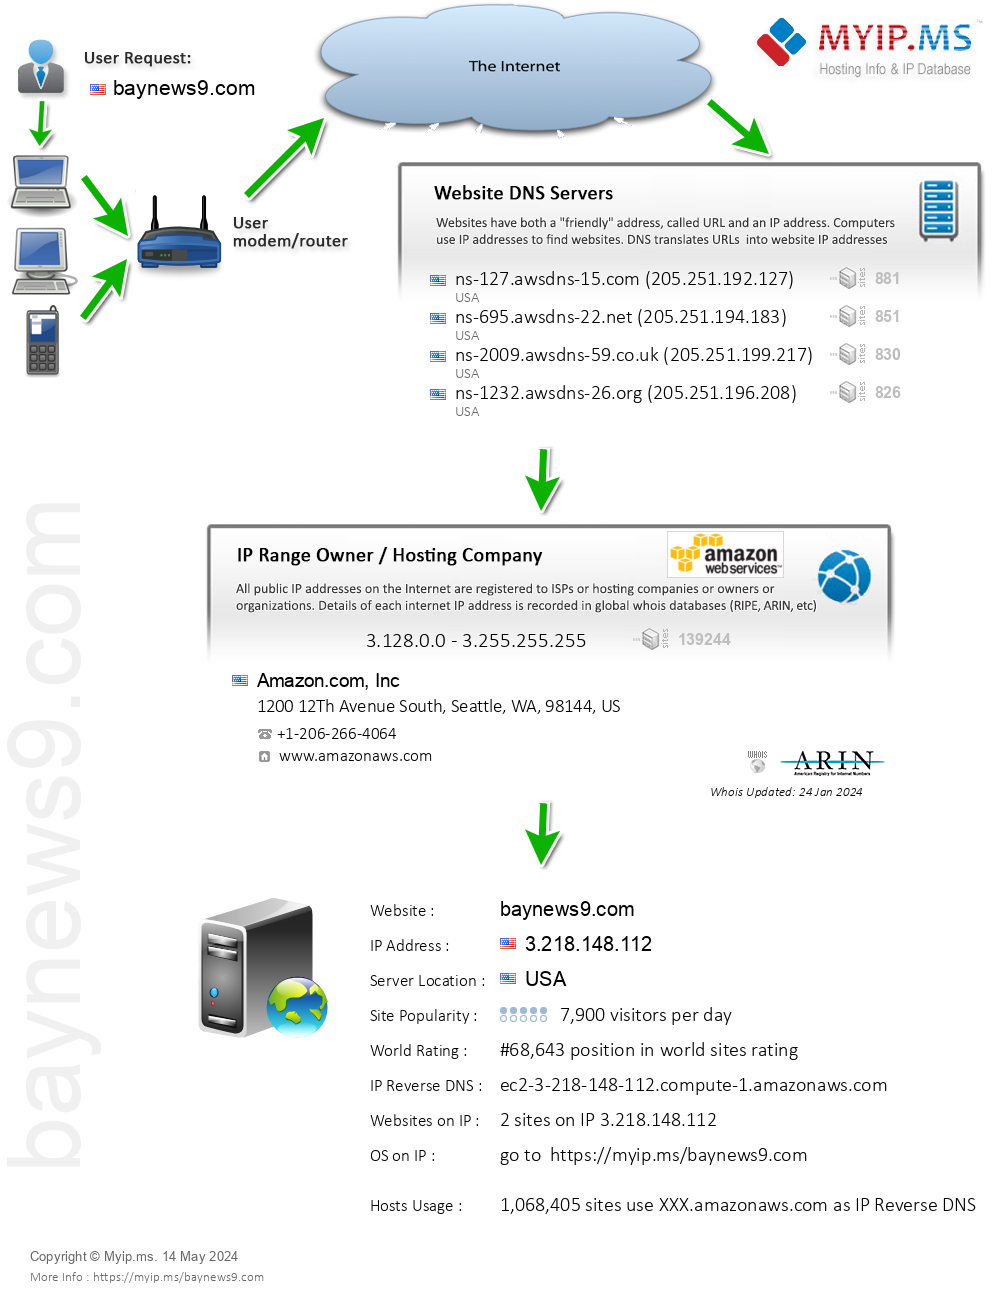 Baynews9.com - Website Hosting Visual IP Diagram